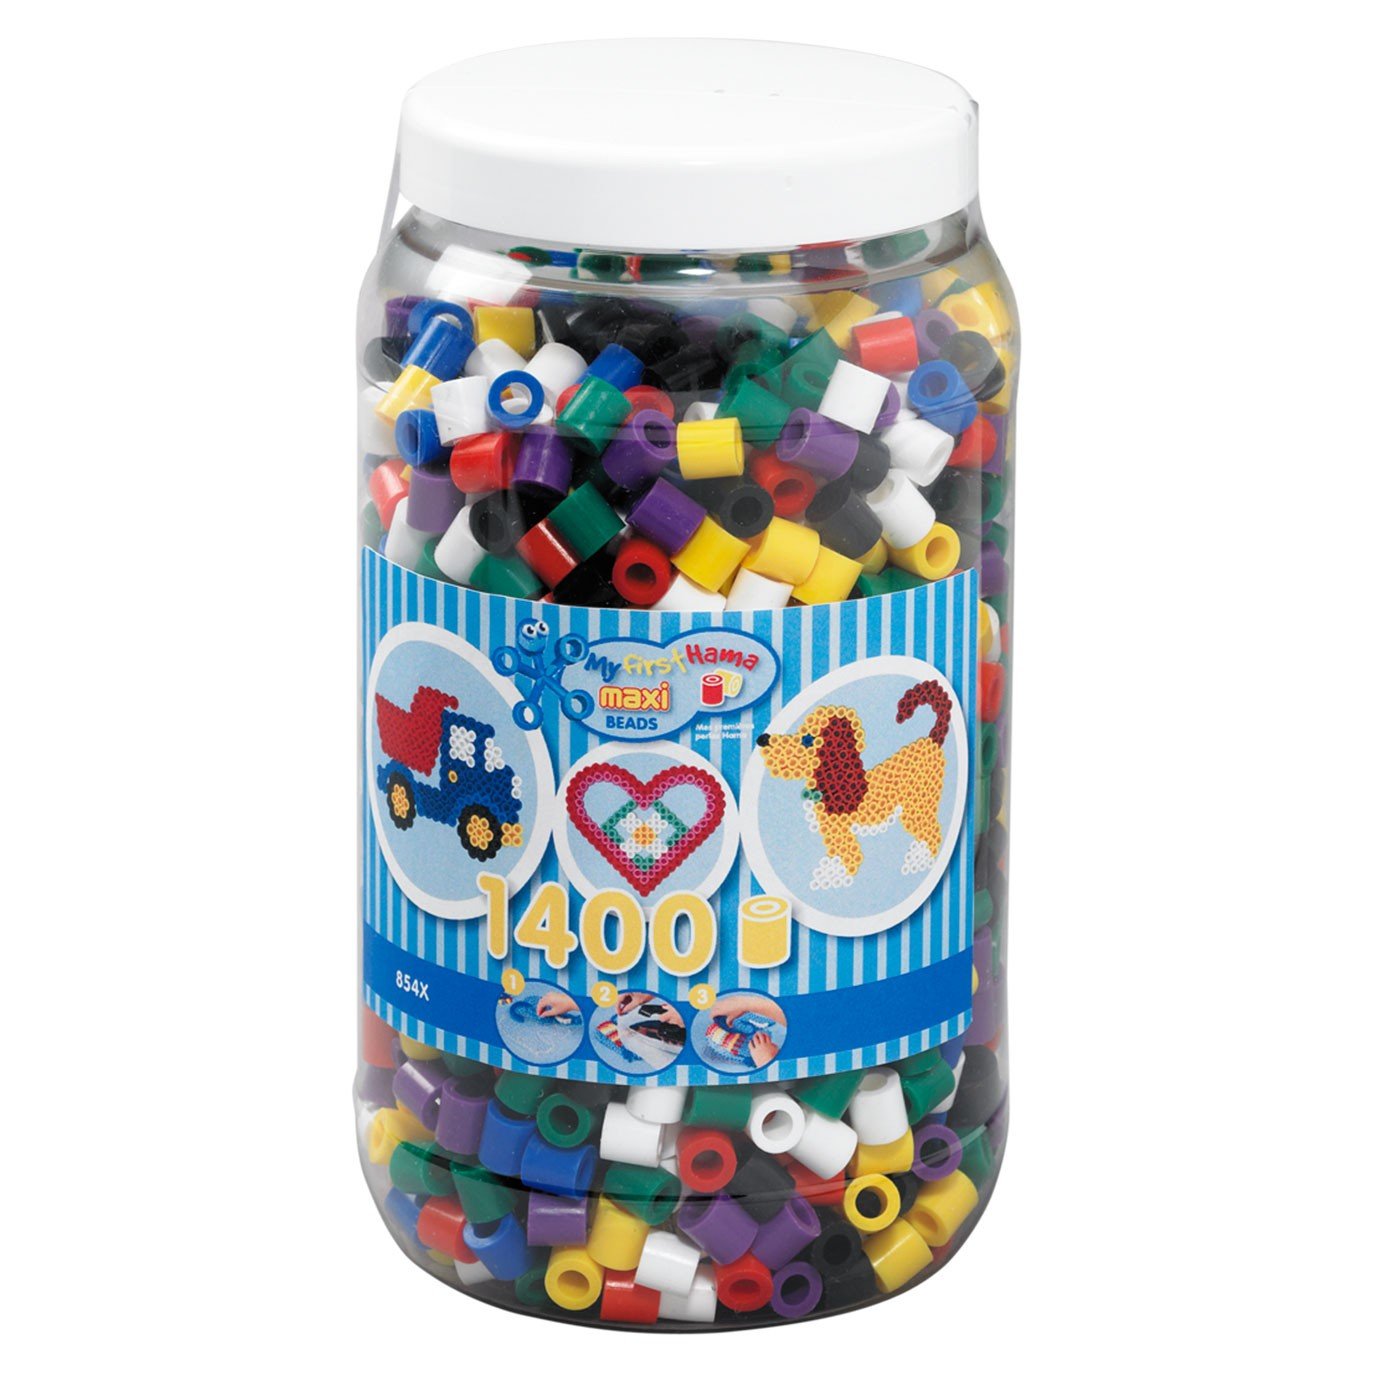 HAMA - Maxi Beads - Beads in bucket - 1400pcs (8540)